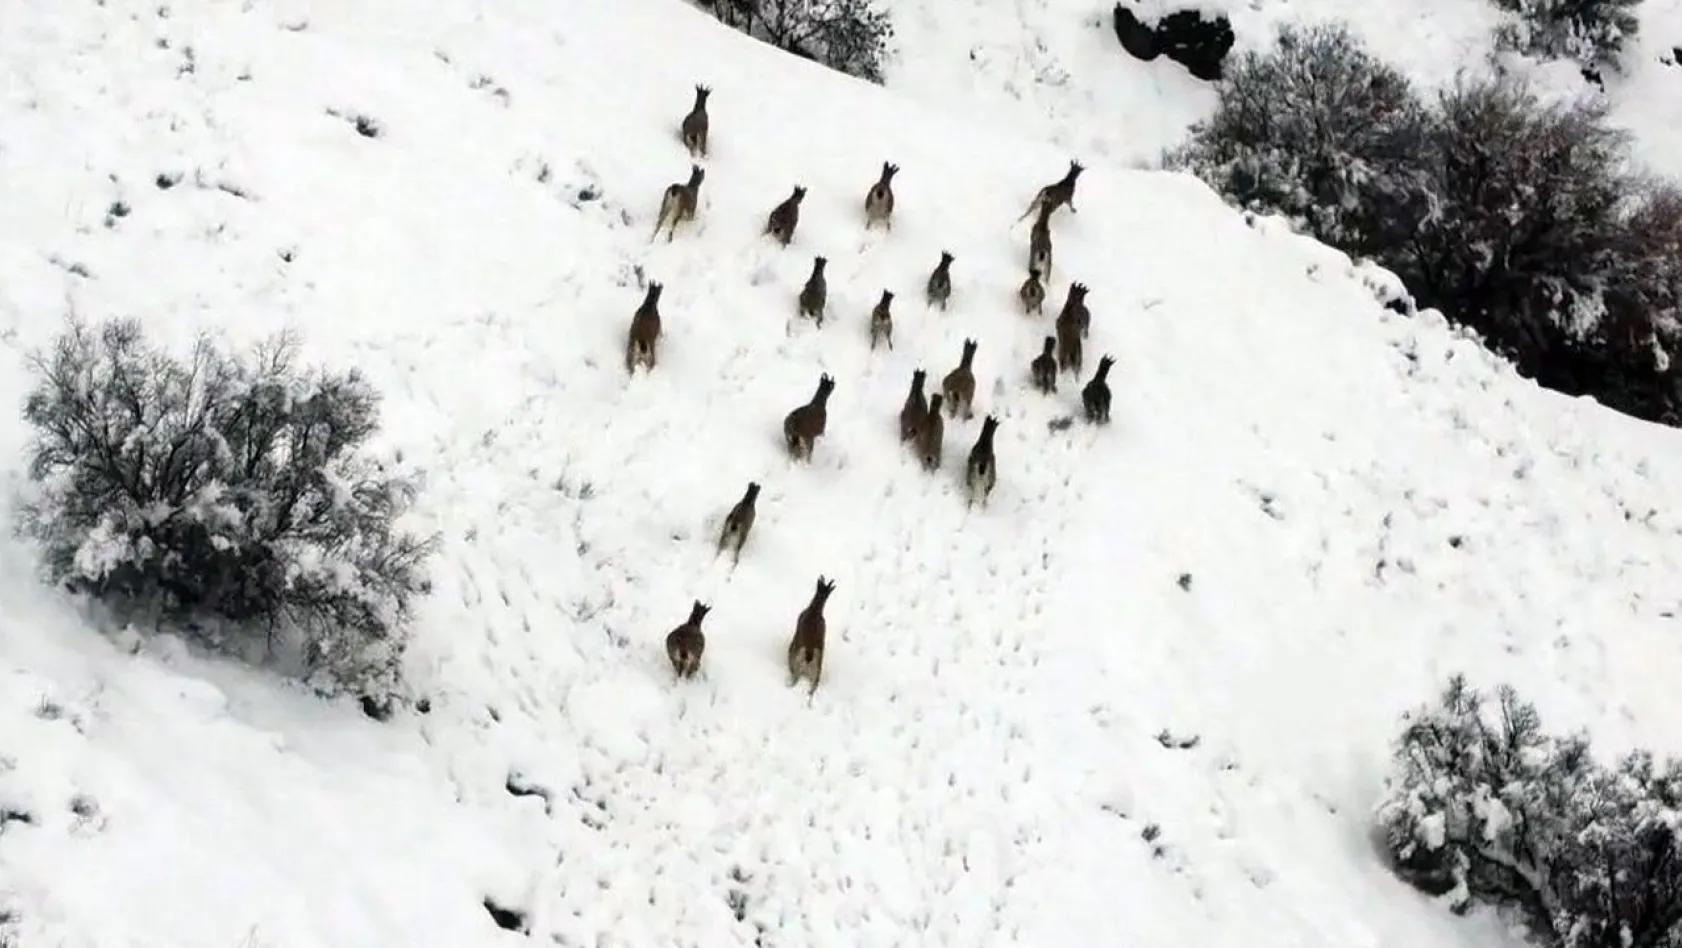 Karlı dağlarda yem arayan dağ keçileri görüntülendi